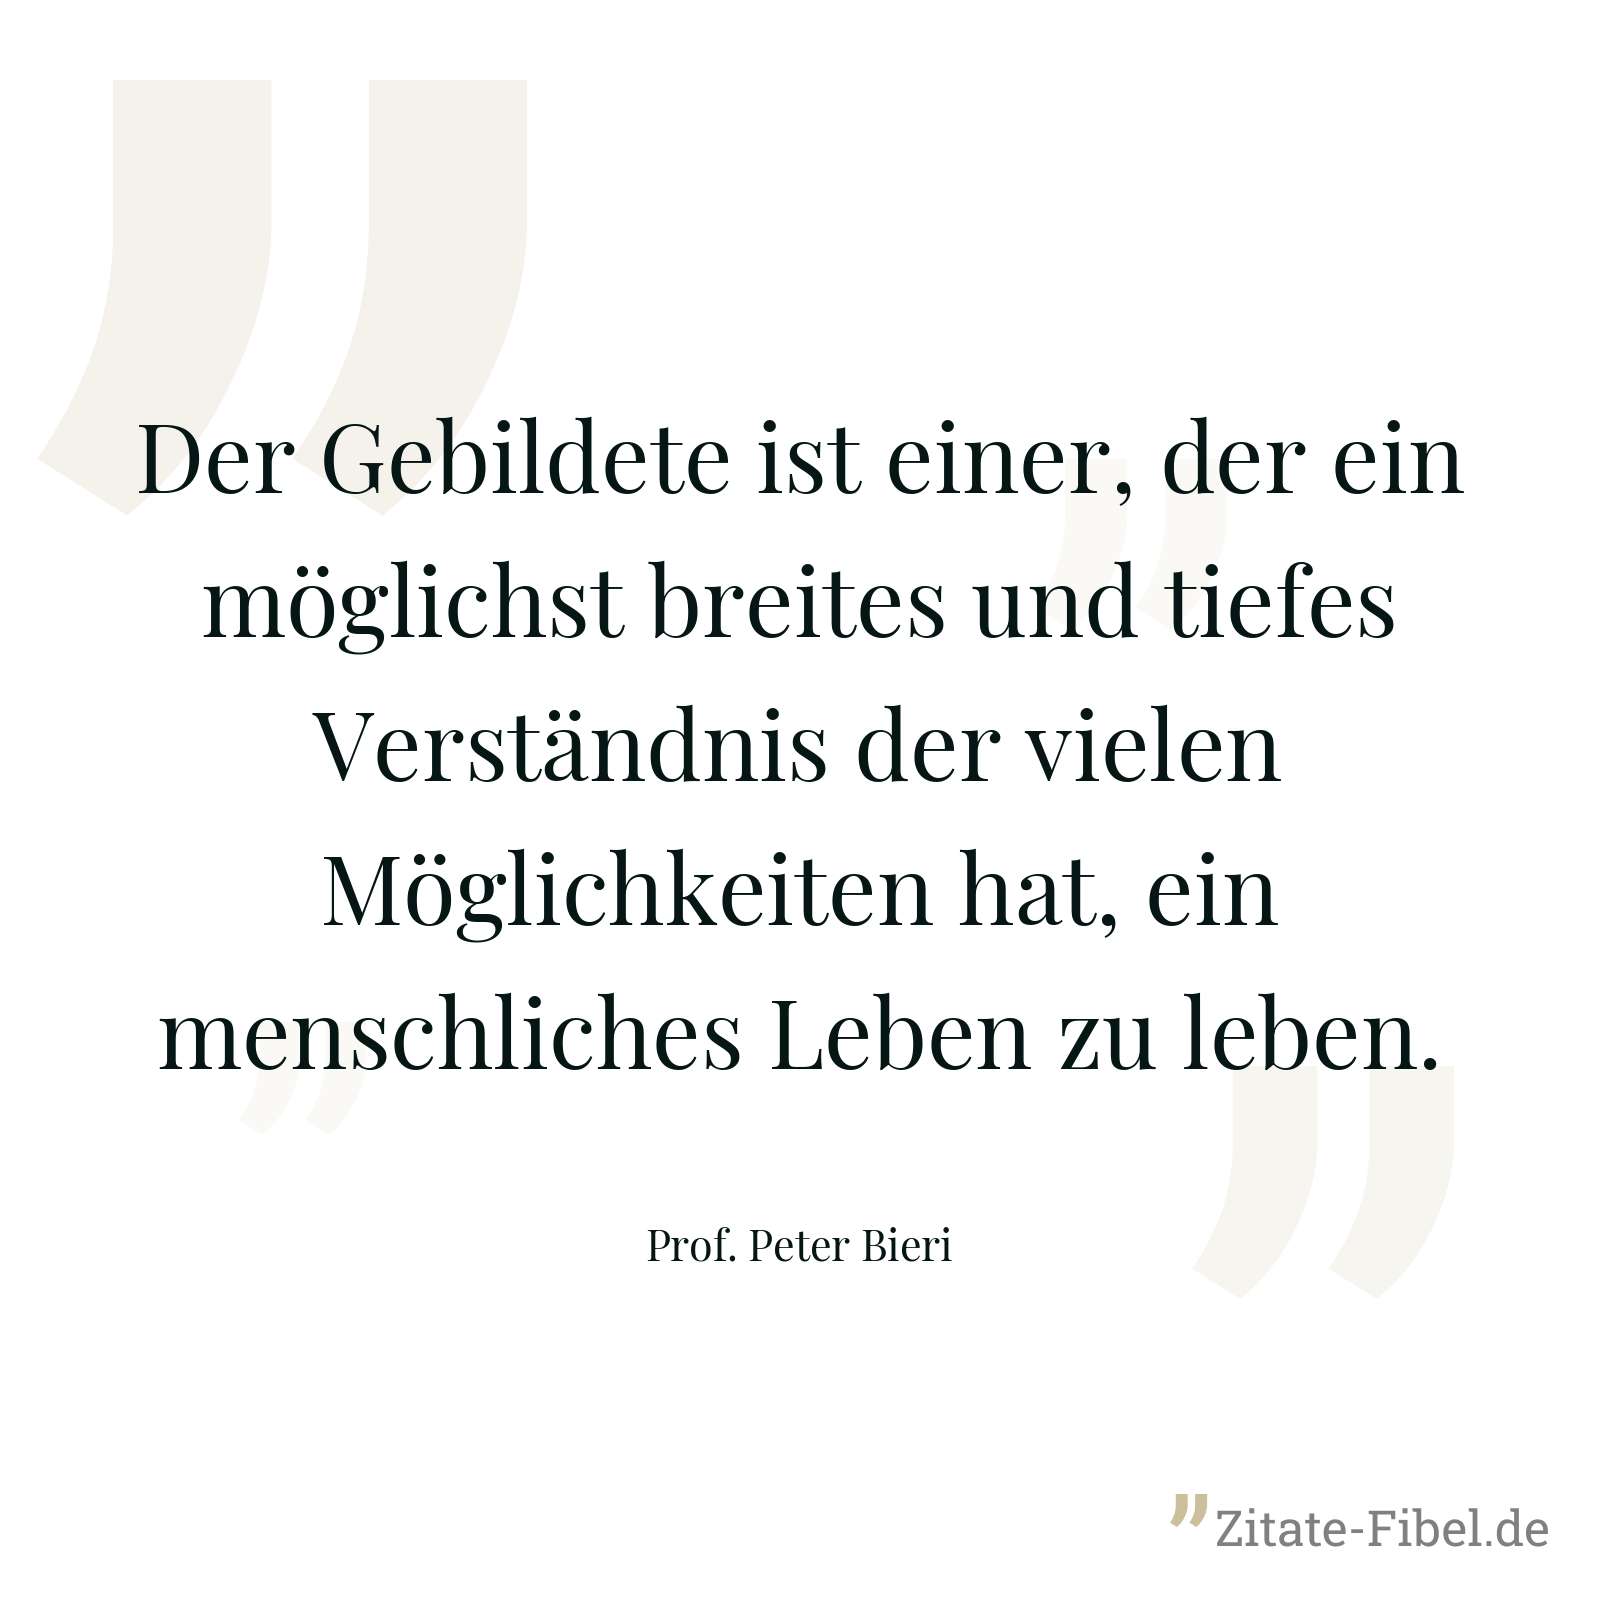 Der Gebildete ist einer, der ein möglichst breites und tiefes Verständnis der vielen Möglichkeiten hat, ein menschliches Leben zu leben. - Prof. Peter Bieri